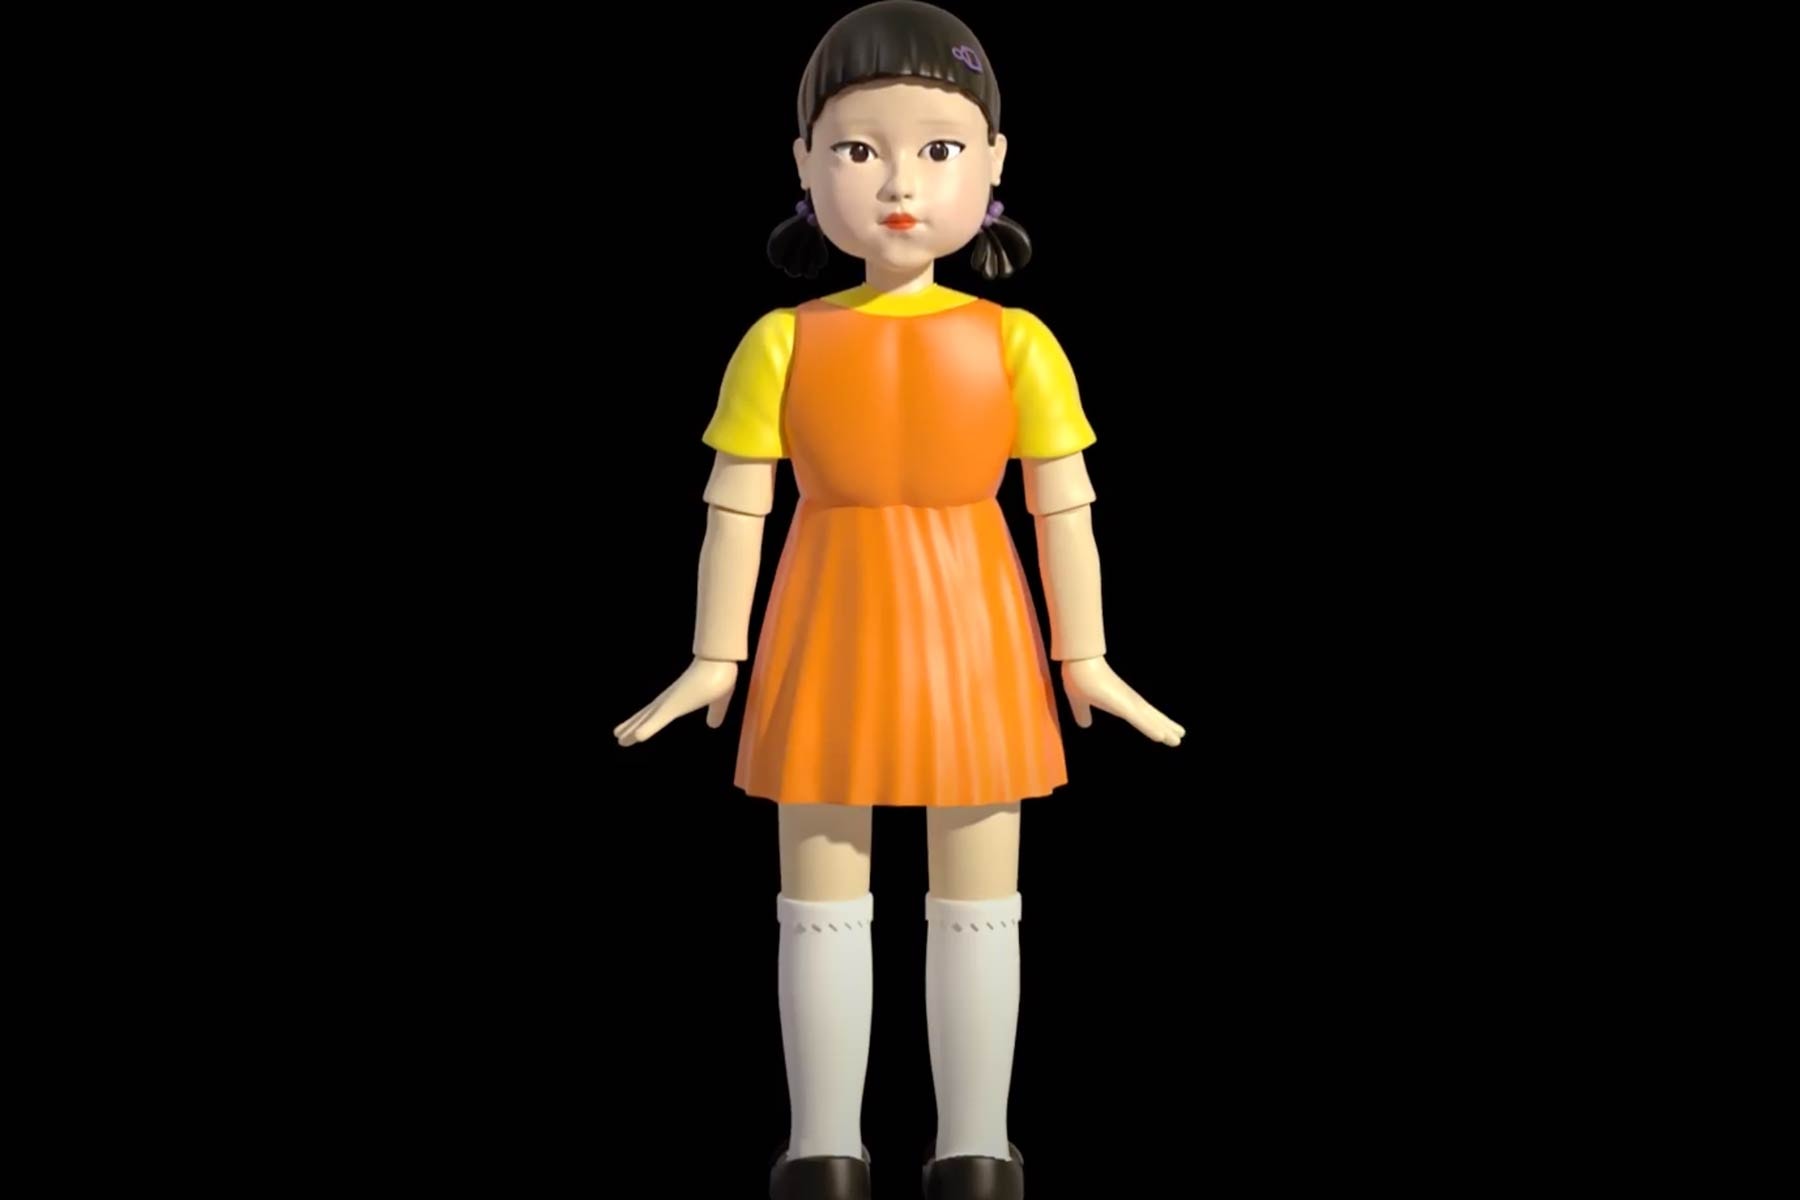 『イカゲーム』に登場する恐怖のヨンヒ人形が初のフィギュア化 Netflix squid game FWENCLUB AllRightsReserved Younghee red light green light doll figure